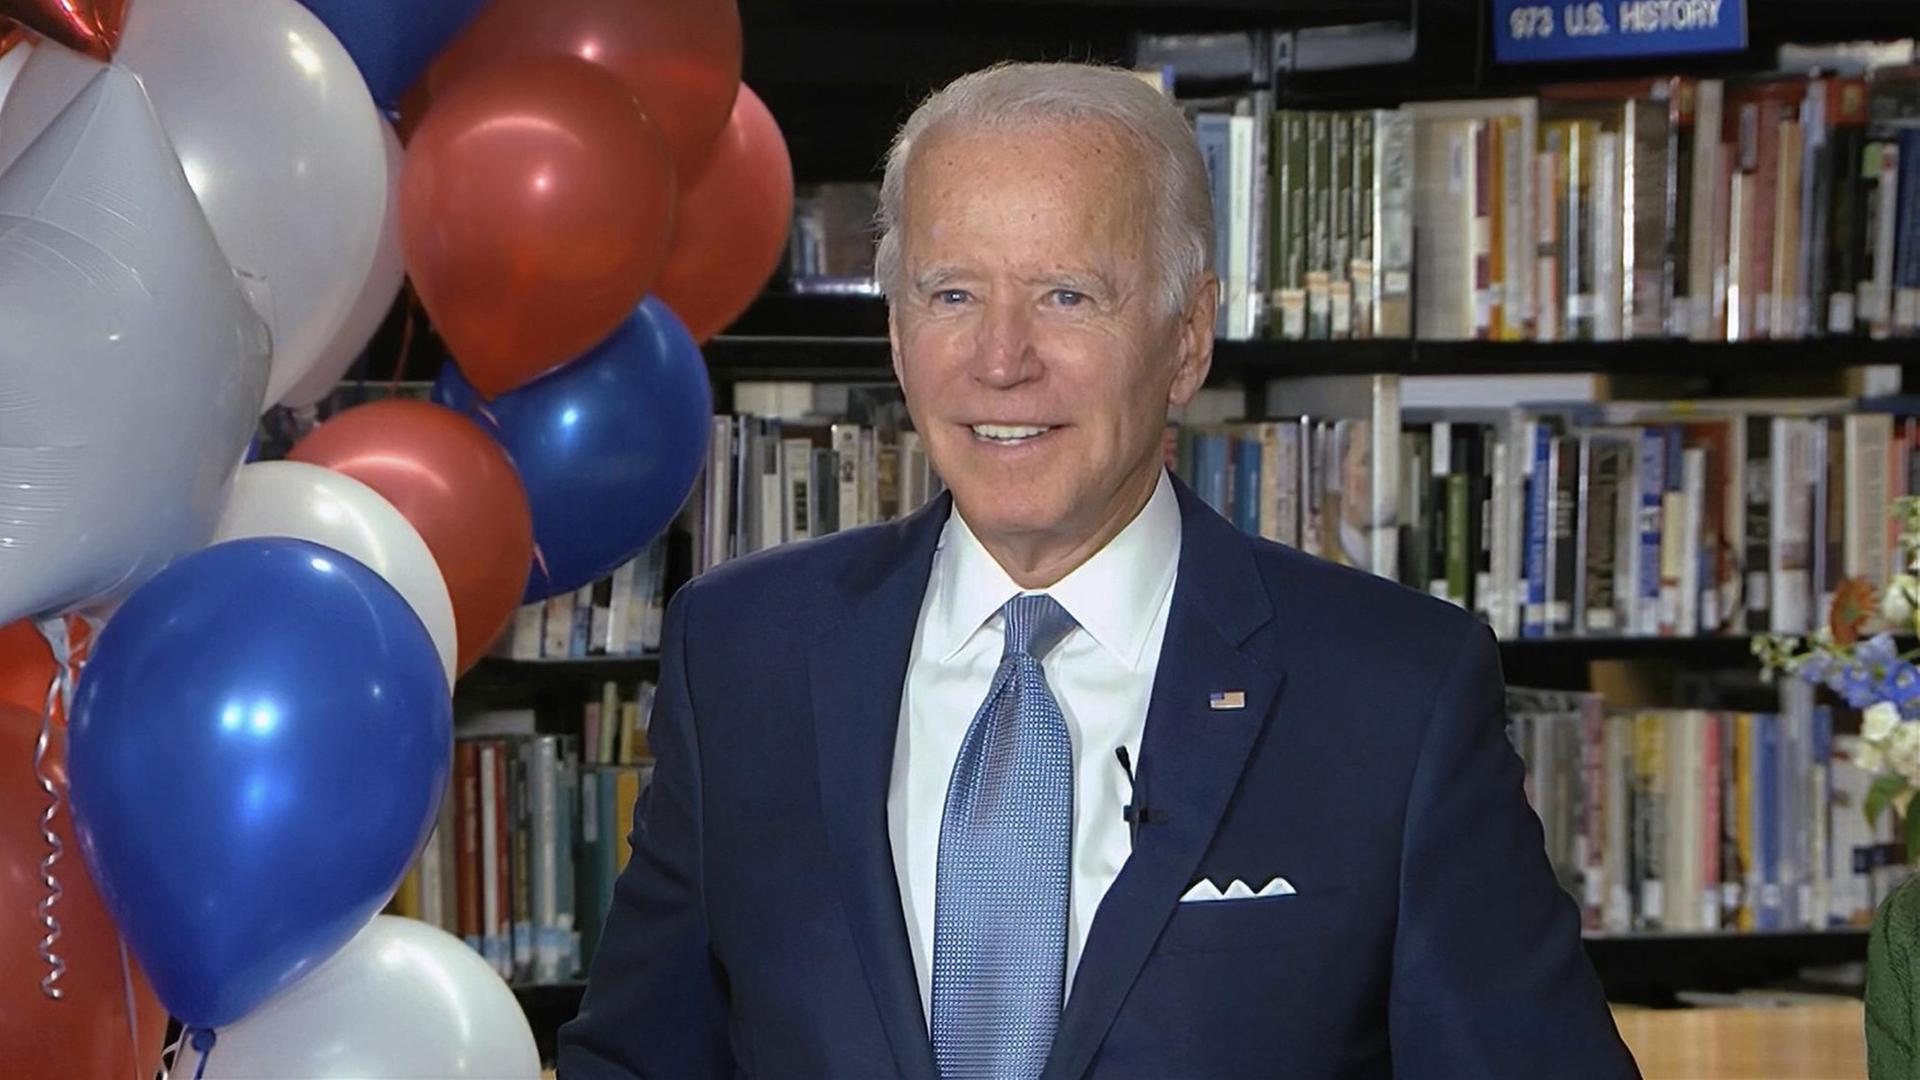 Joe Biden, Präsidentschaftskandidat der Demokraten, im Anzug nach seiner Nominierung während eines Parteitages. Neben ihm sind blaue, weiße und rote Luftballons zu sehen.